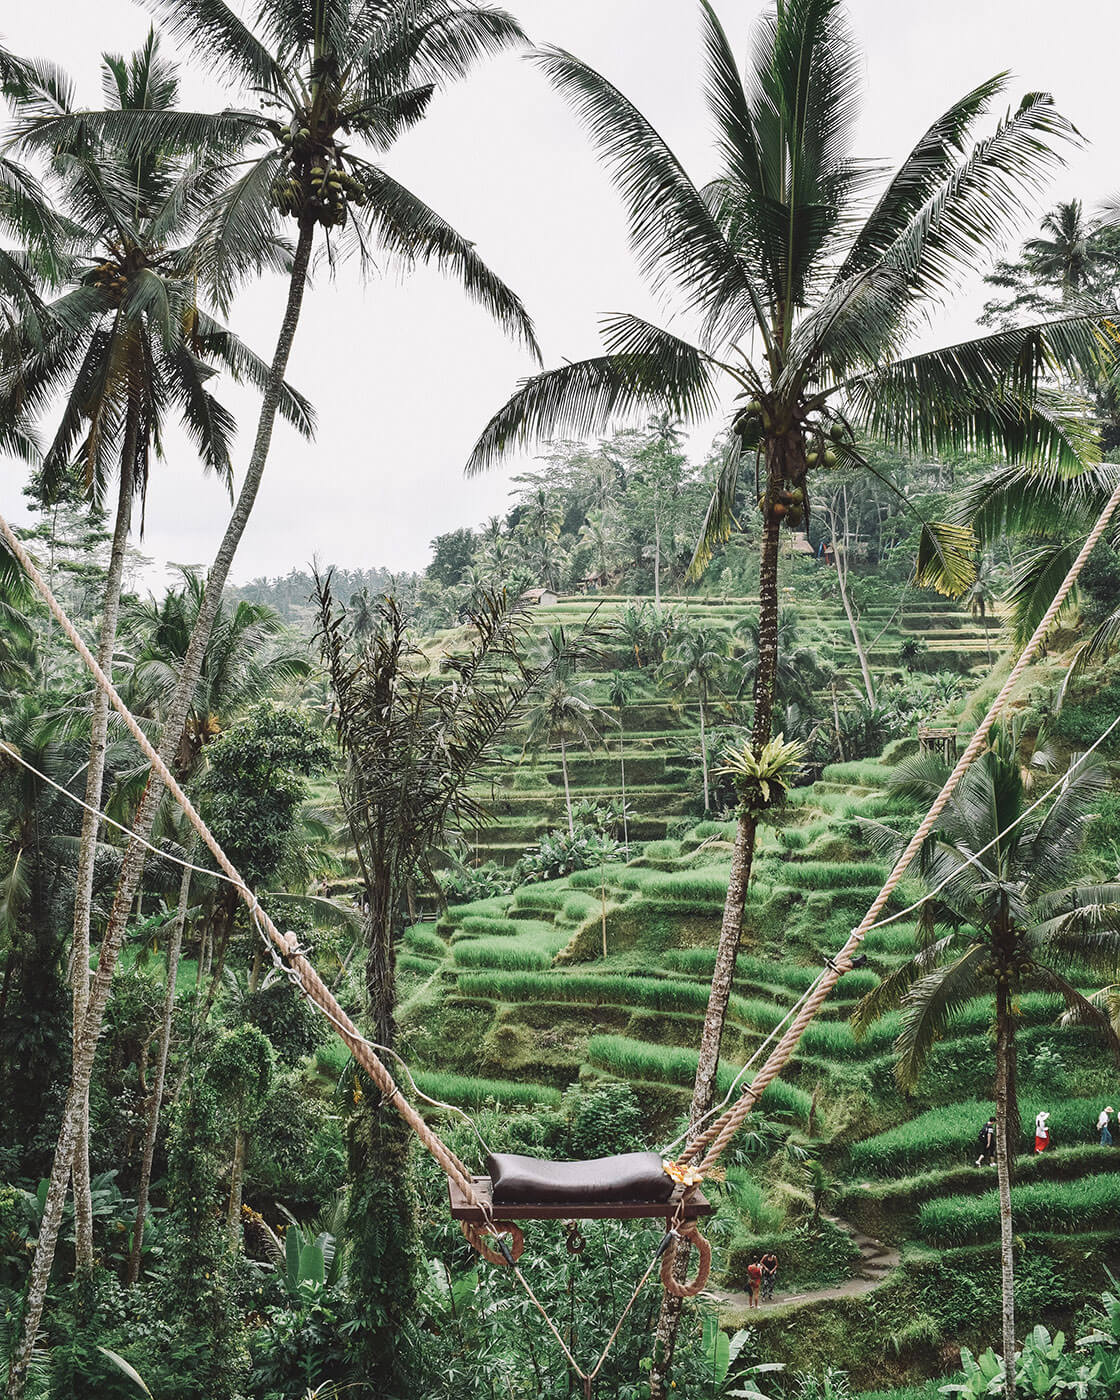 Bali Swings in Ubud